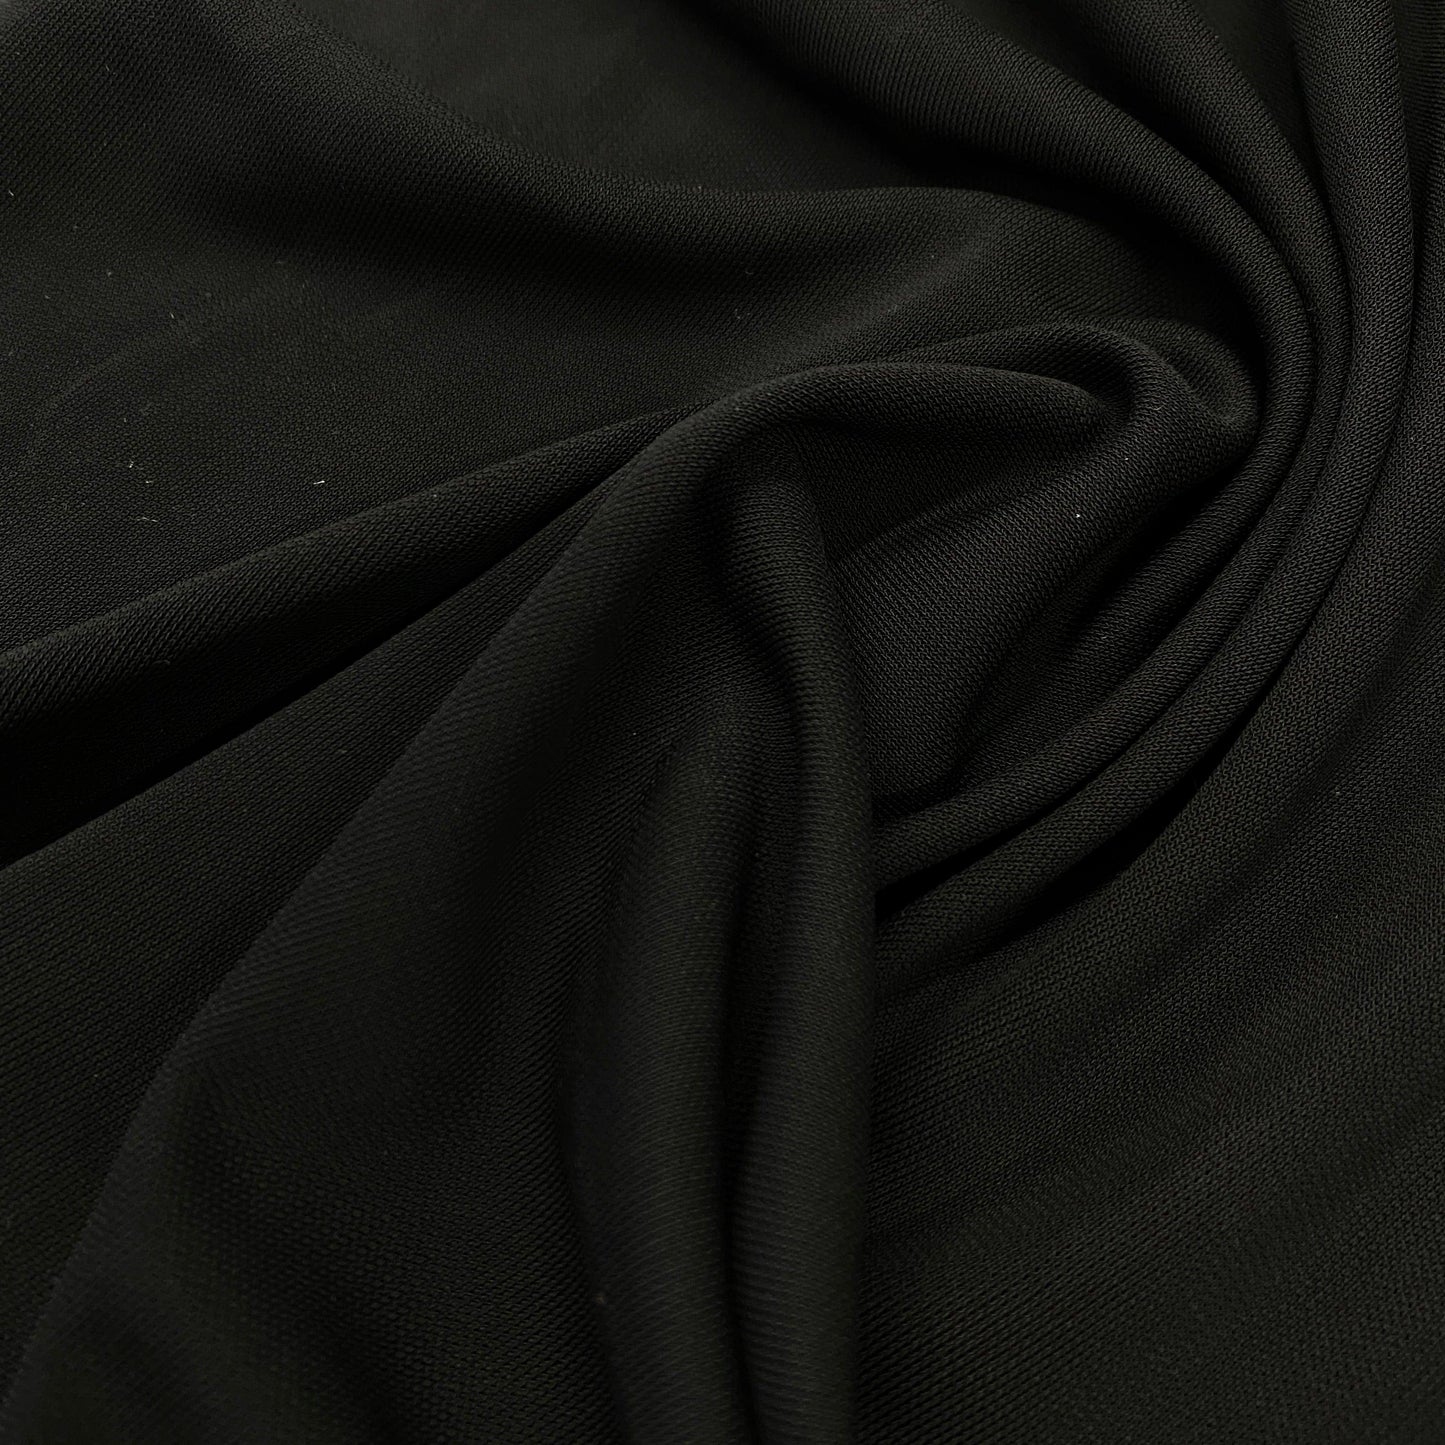 Black Rayon Jersey Fabric - Nature's Fabrics